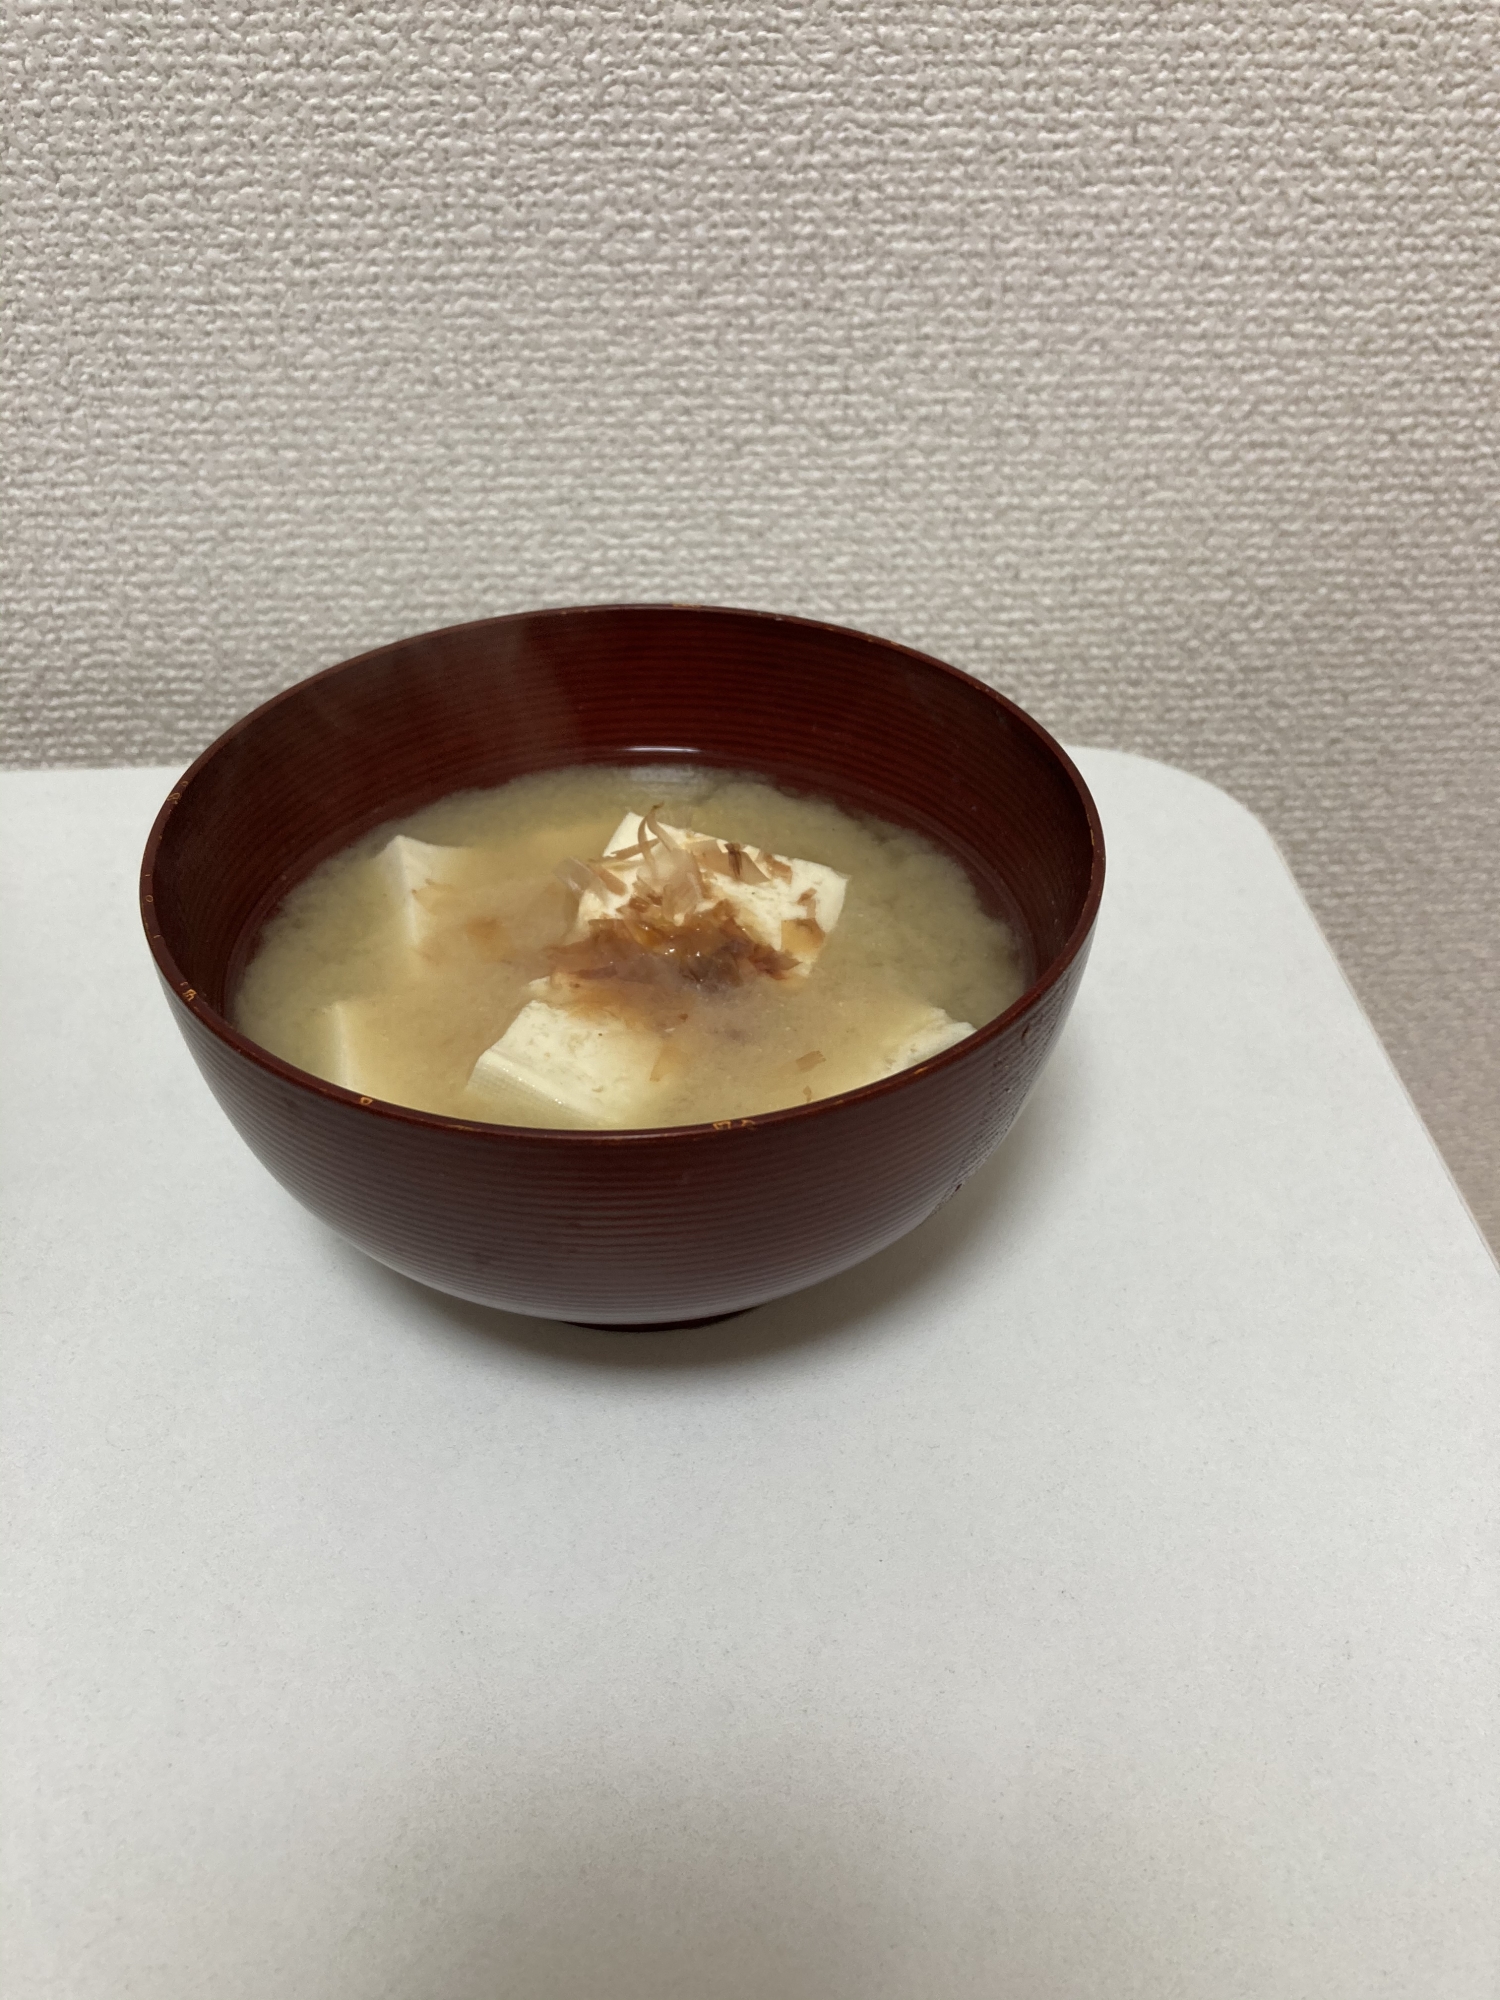 出汁のきいた豆腐の味噌汁